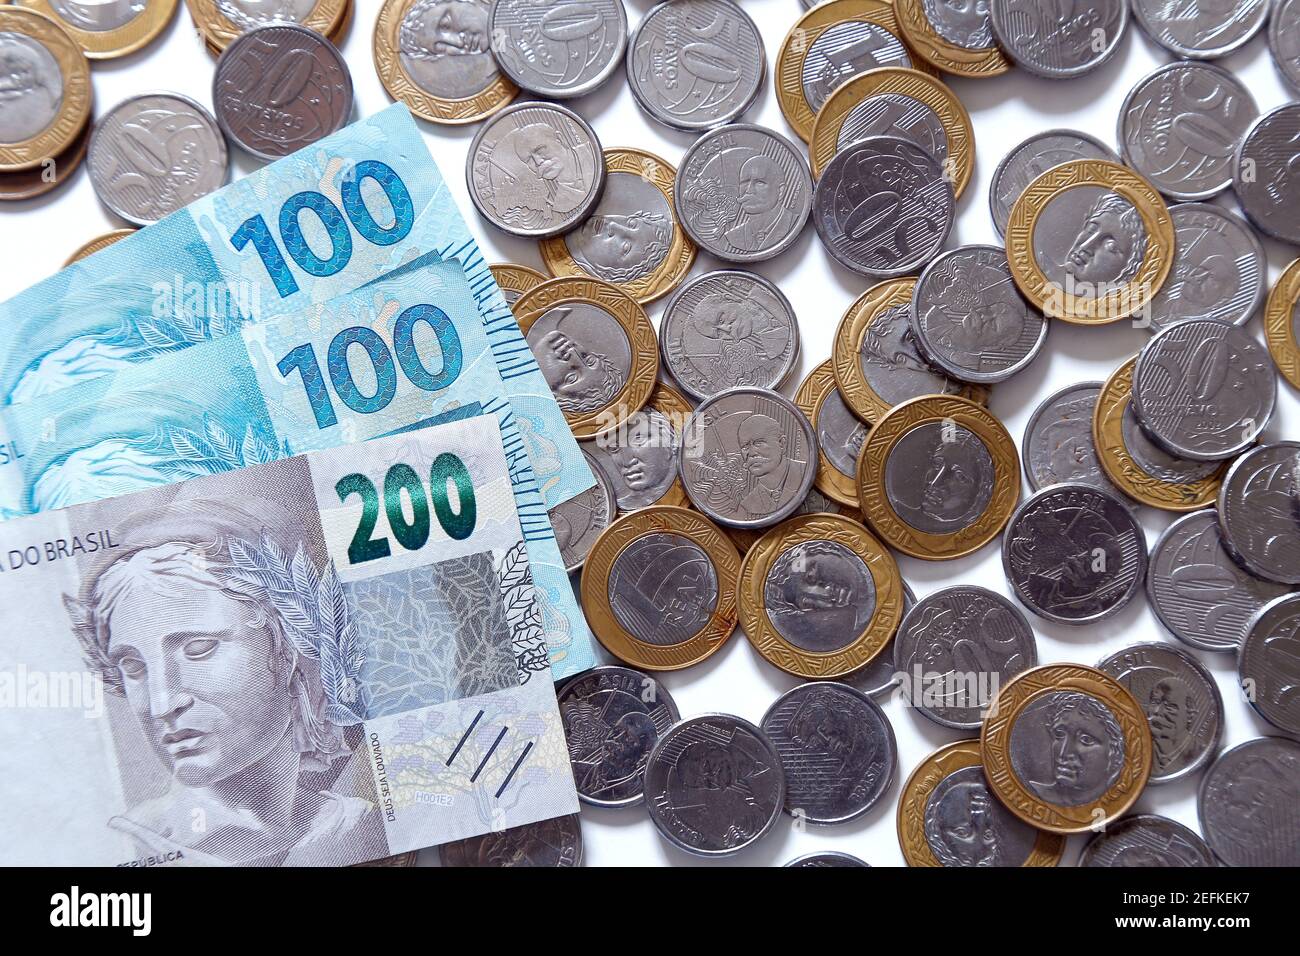 billets d'argent et groupe de pièces de monnaie réelles brésiliennes - économie et concept financier Banque D'Images